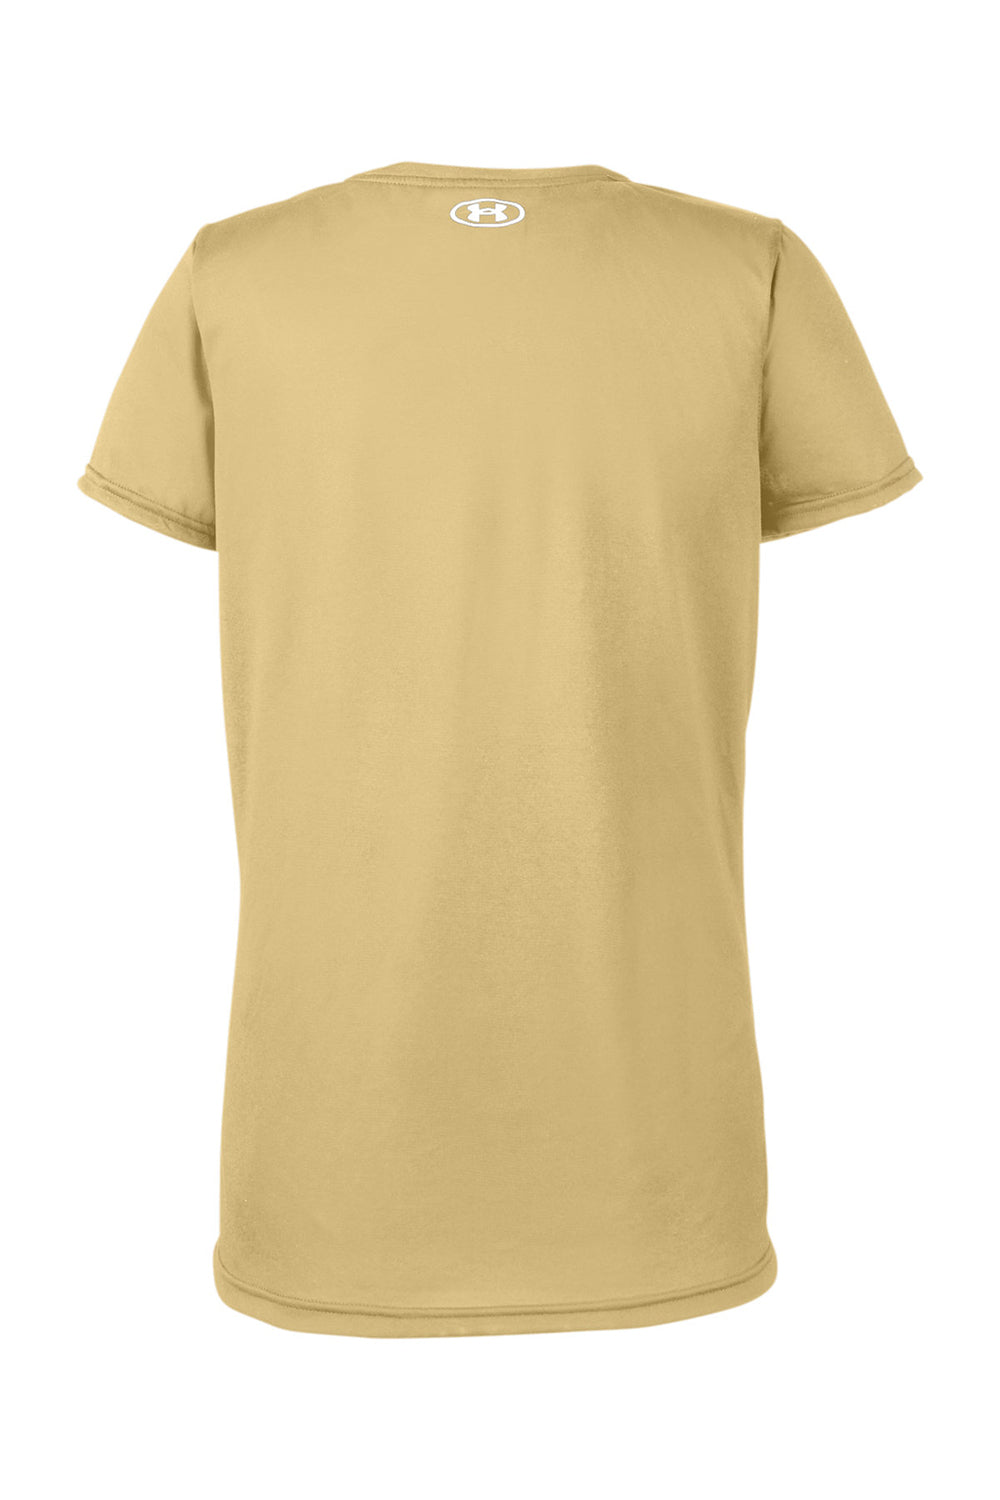 Under Armour 1376847 Womens Team Tech Moisture Wicking Short Sleeve Crewneck T-Shirt Vegas Gold Flat Back